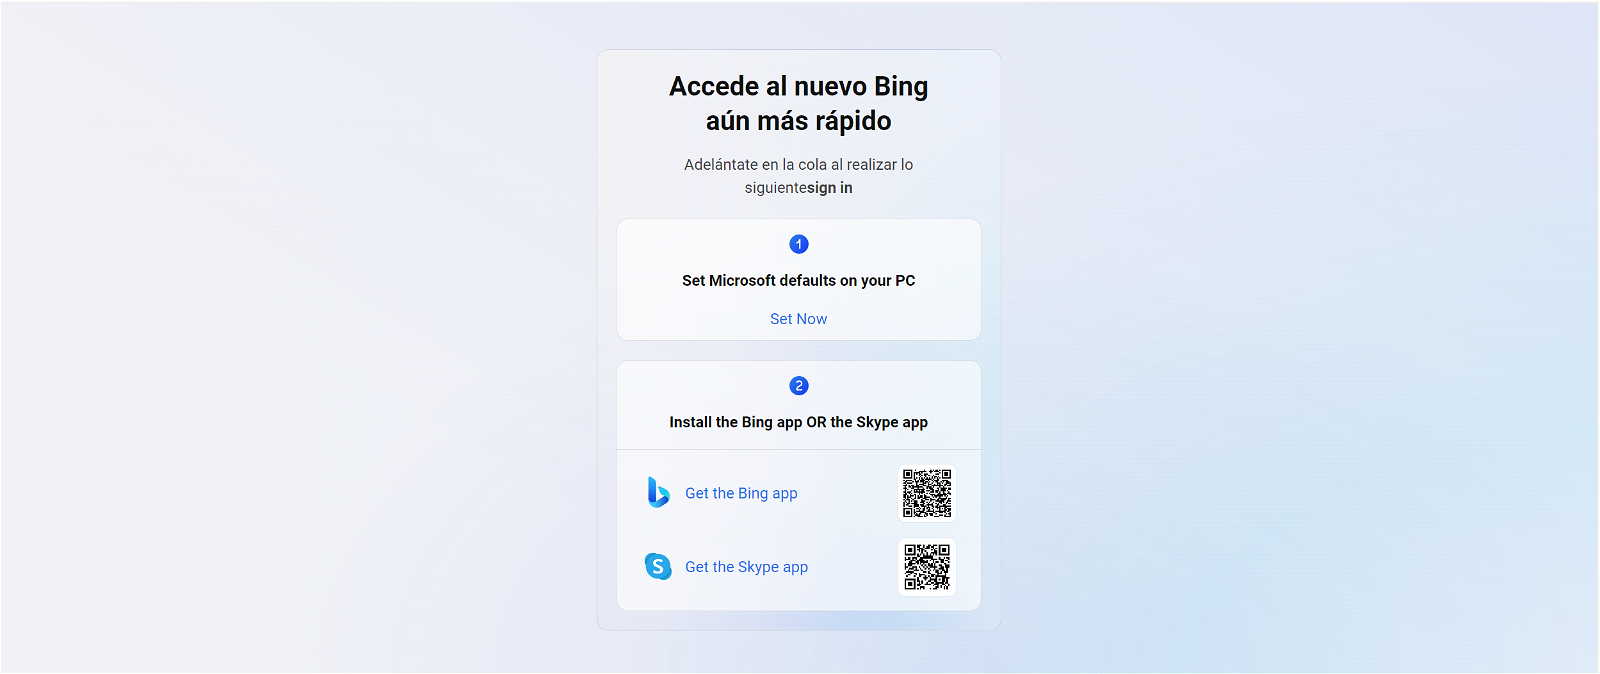 Menú de Bing con ChatGPT para adelantar puestos en la lista de espera